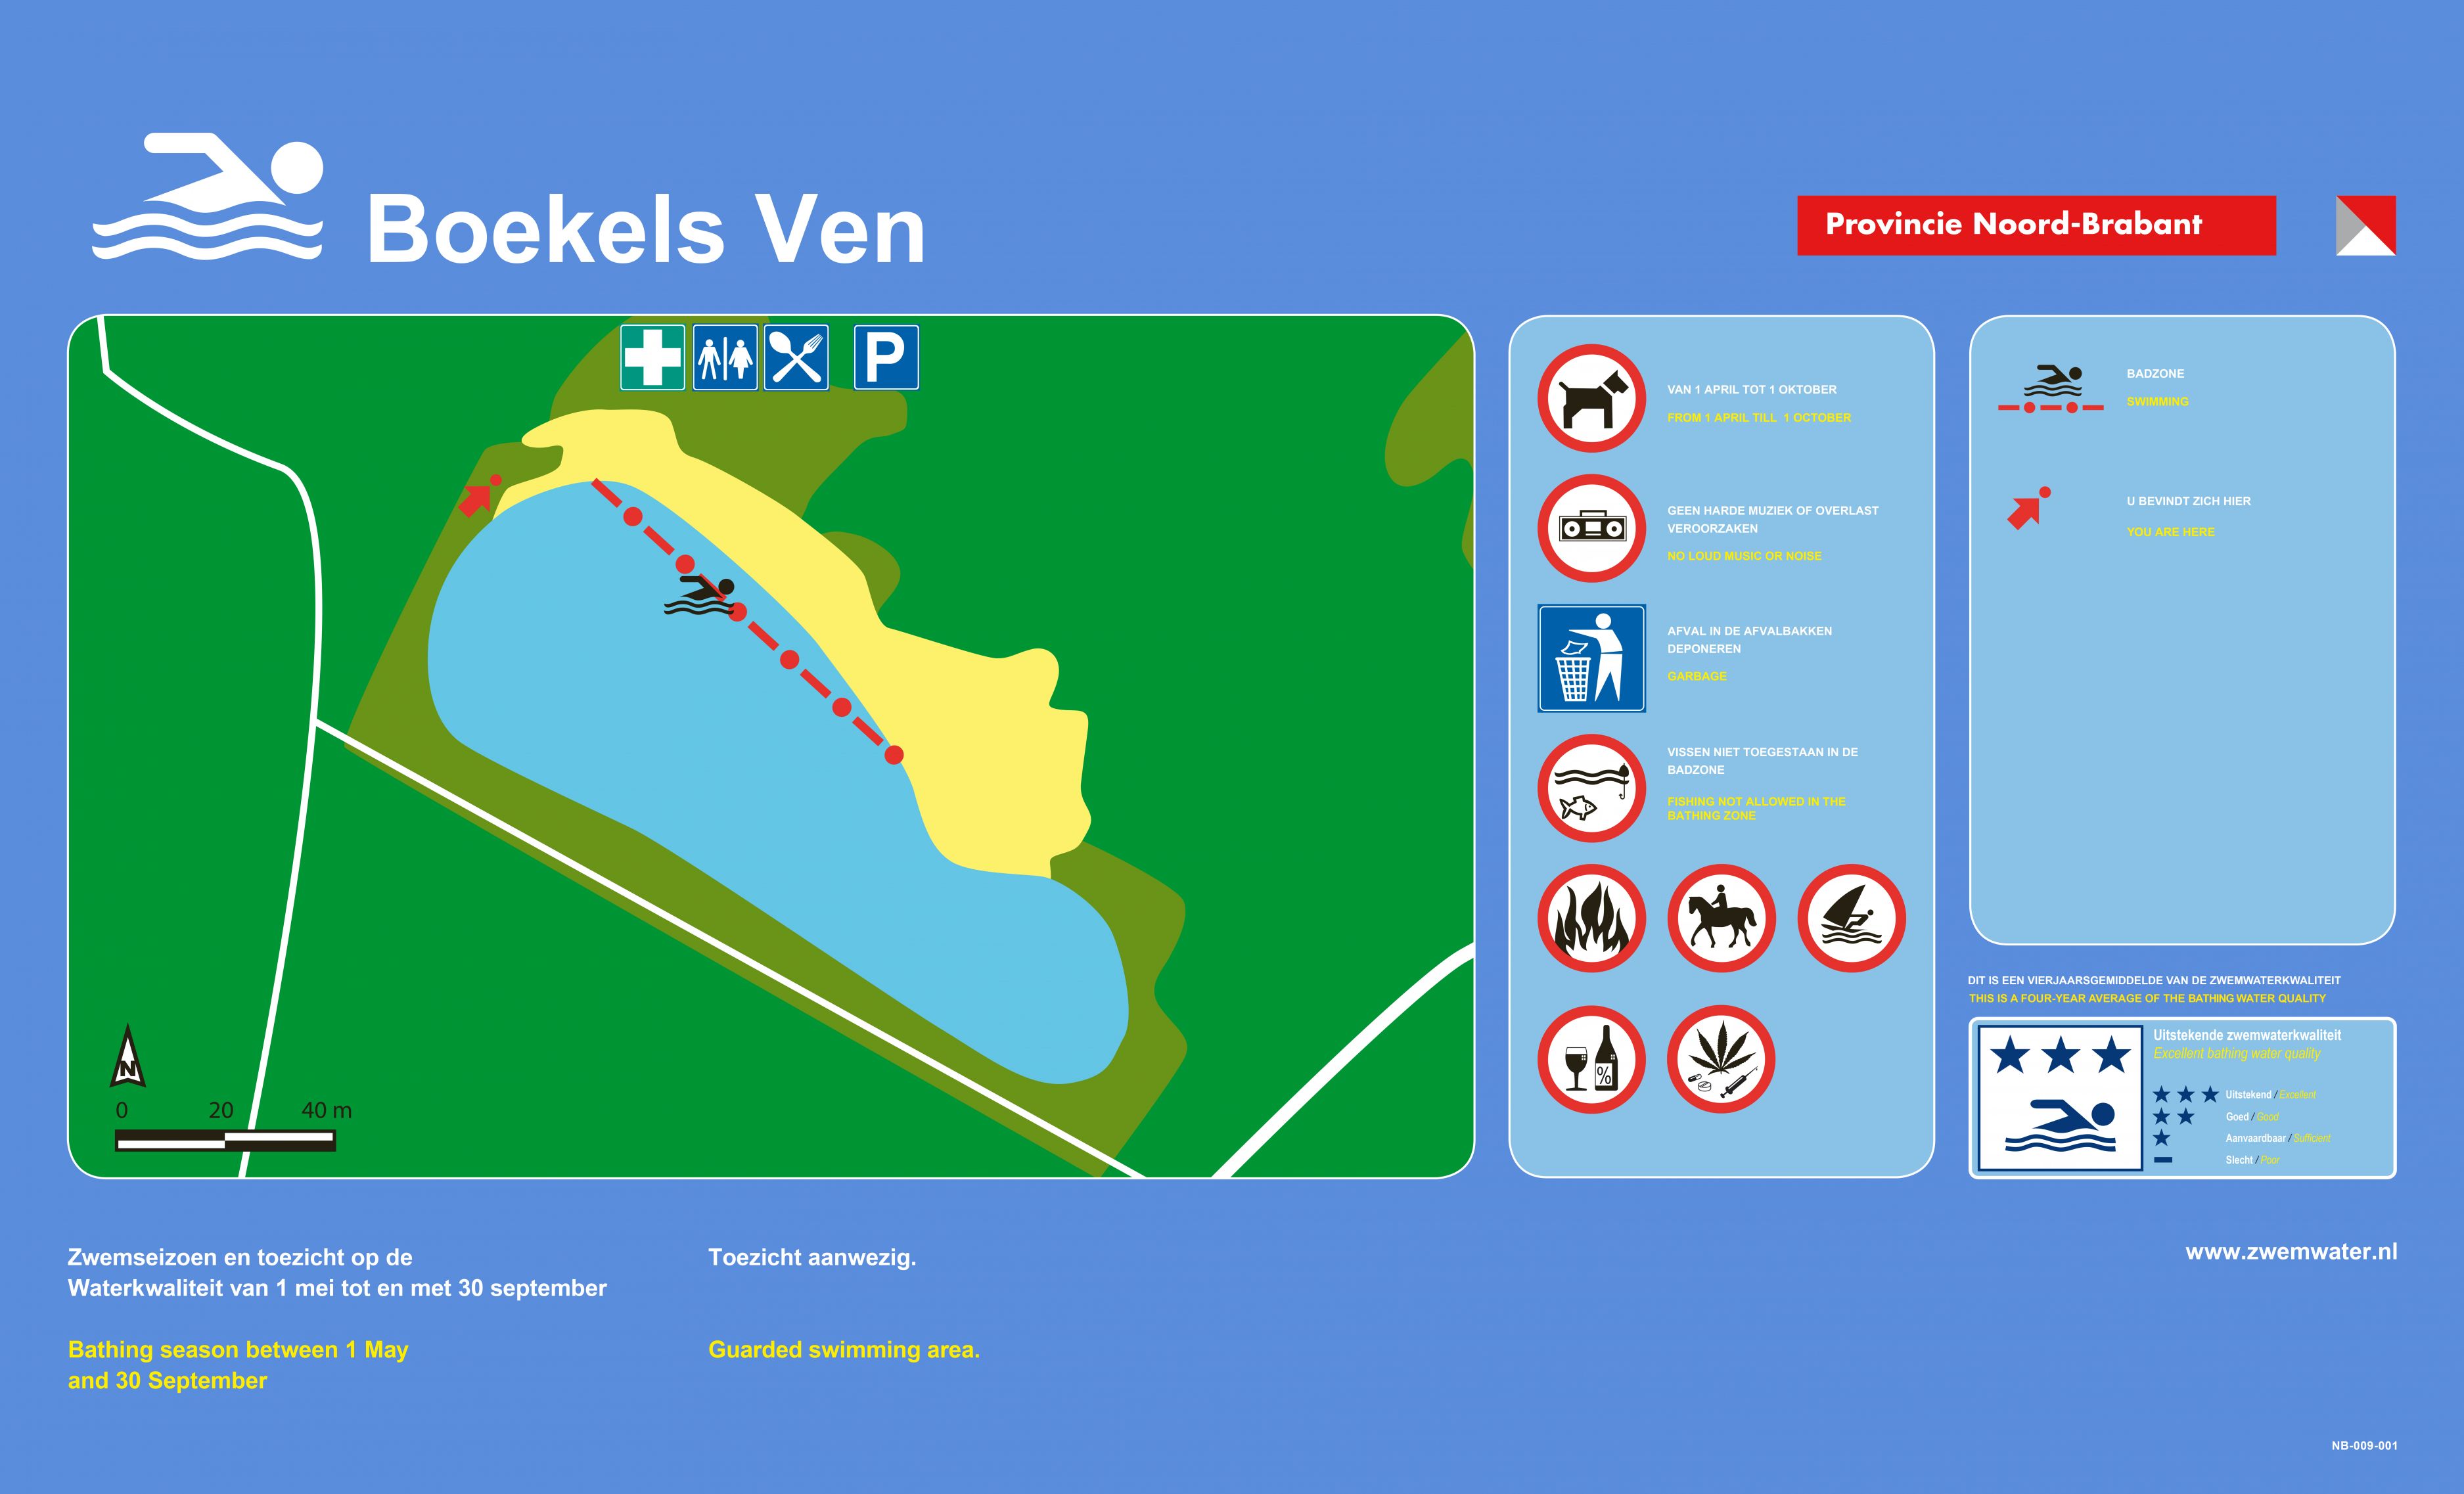 Het informatiebord bij zwemlocatie Boekels Ven